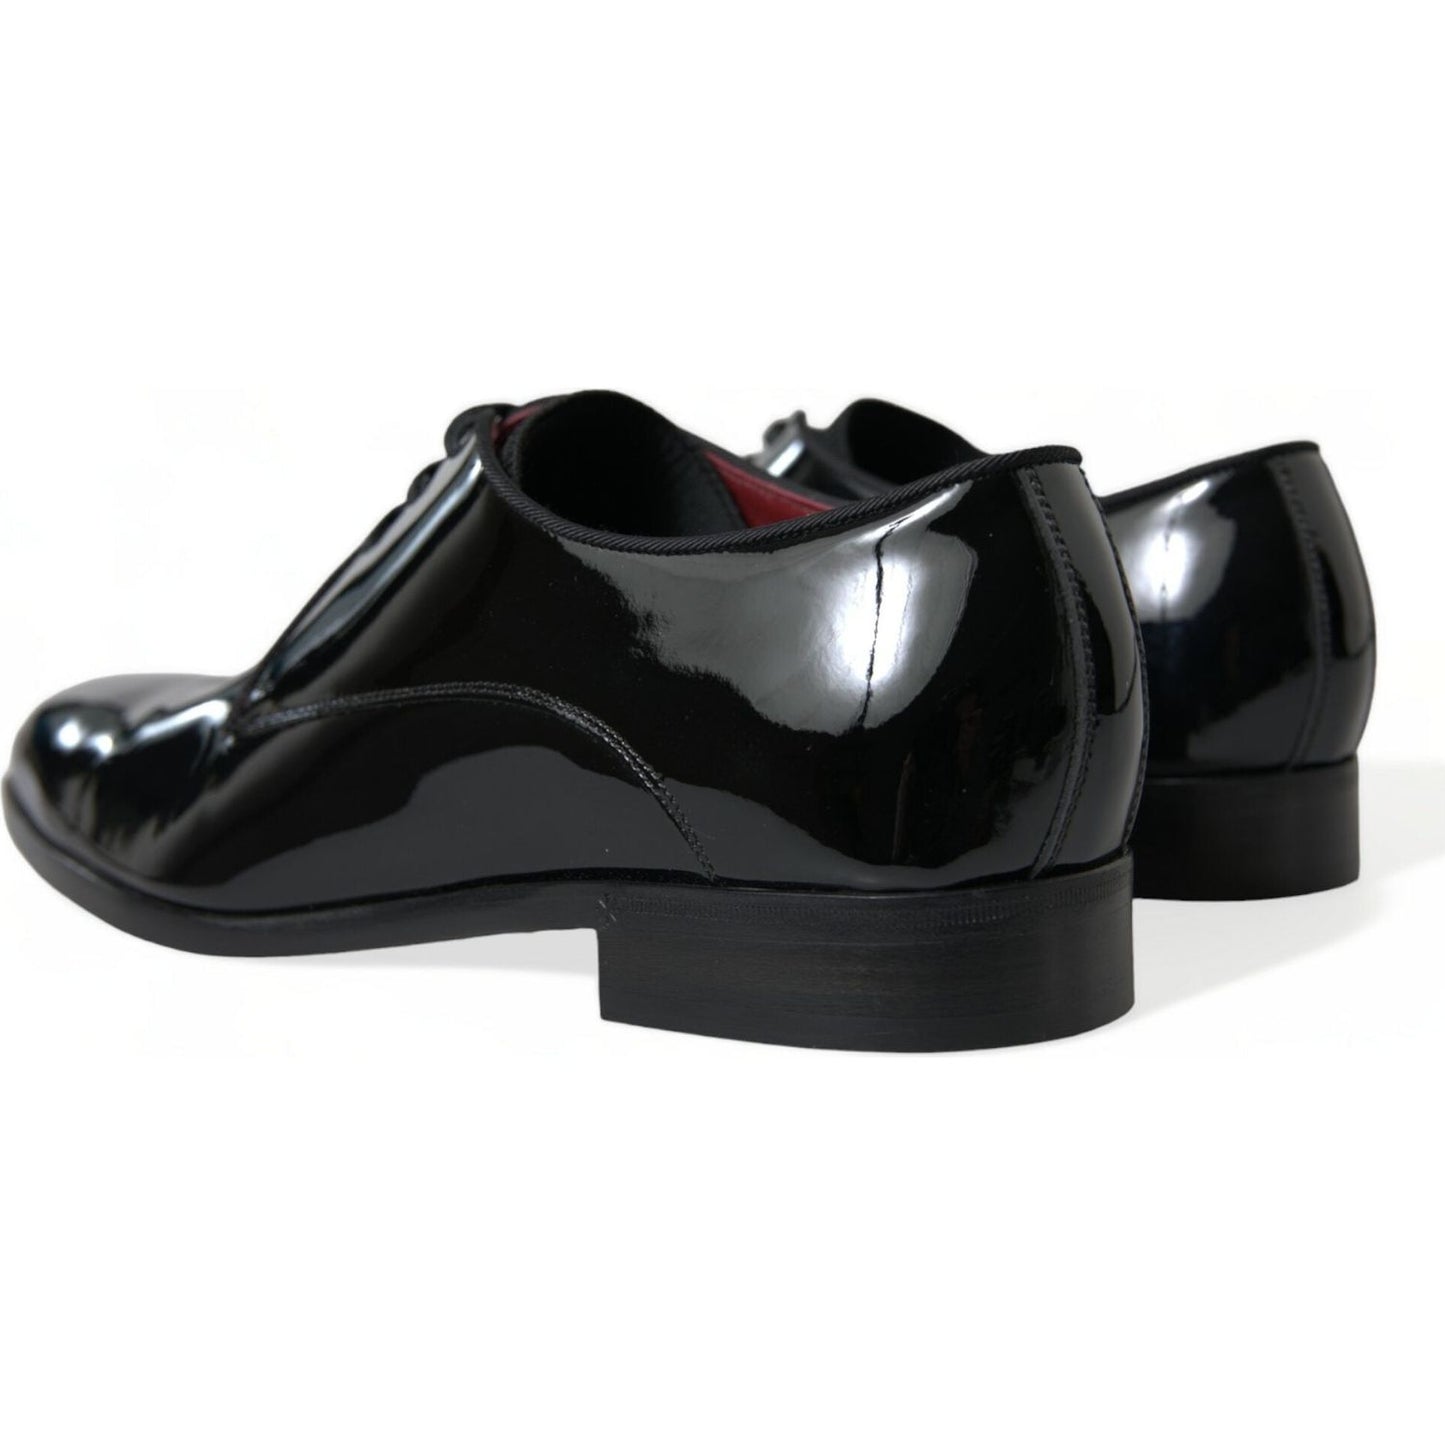 Dolce & Gabbana | Elegant Black Calfskin Leather Derby Shoes| McRichard Designer Brands   